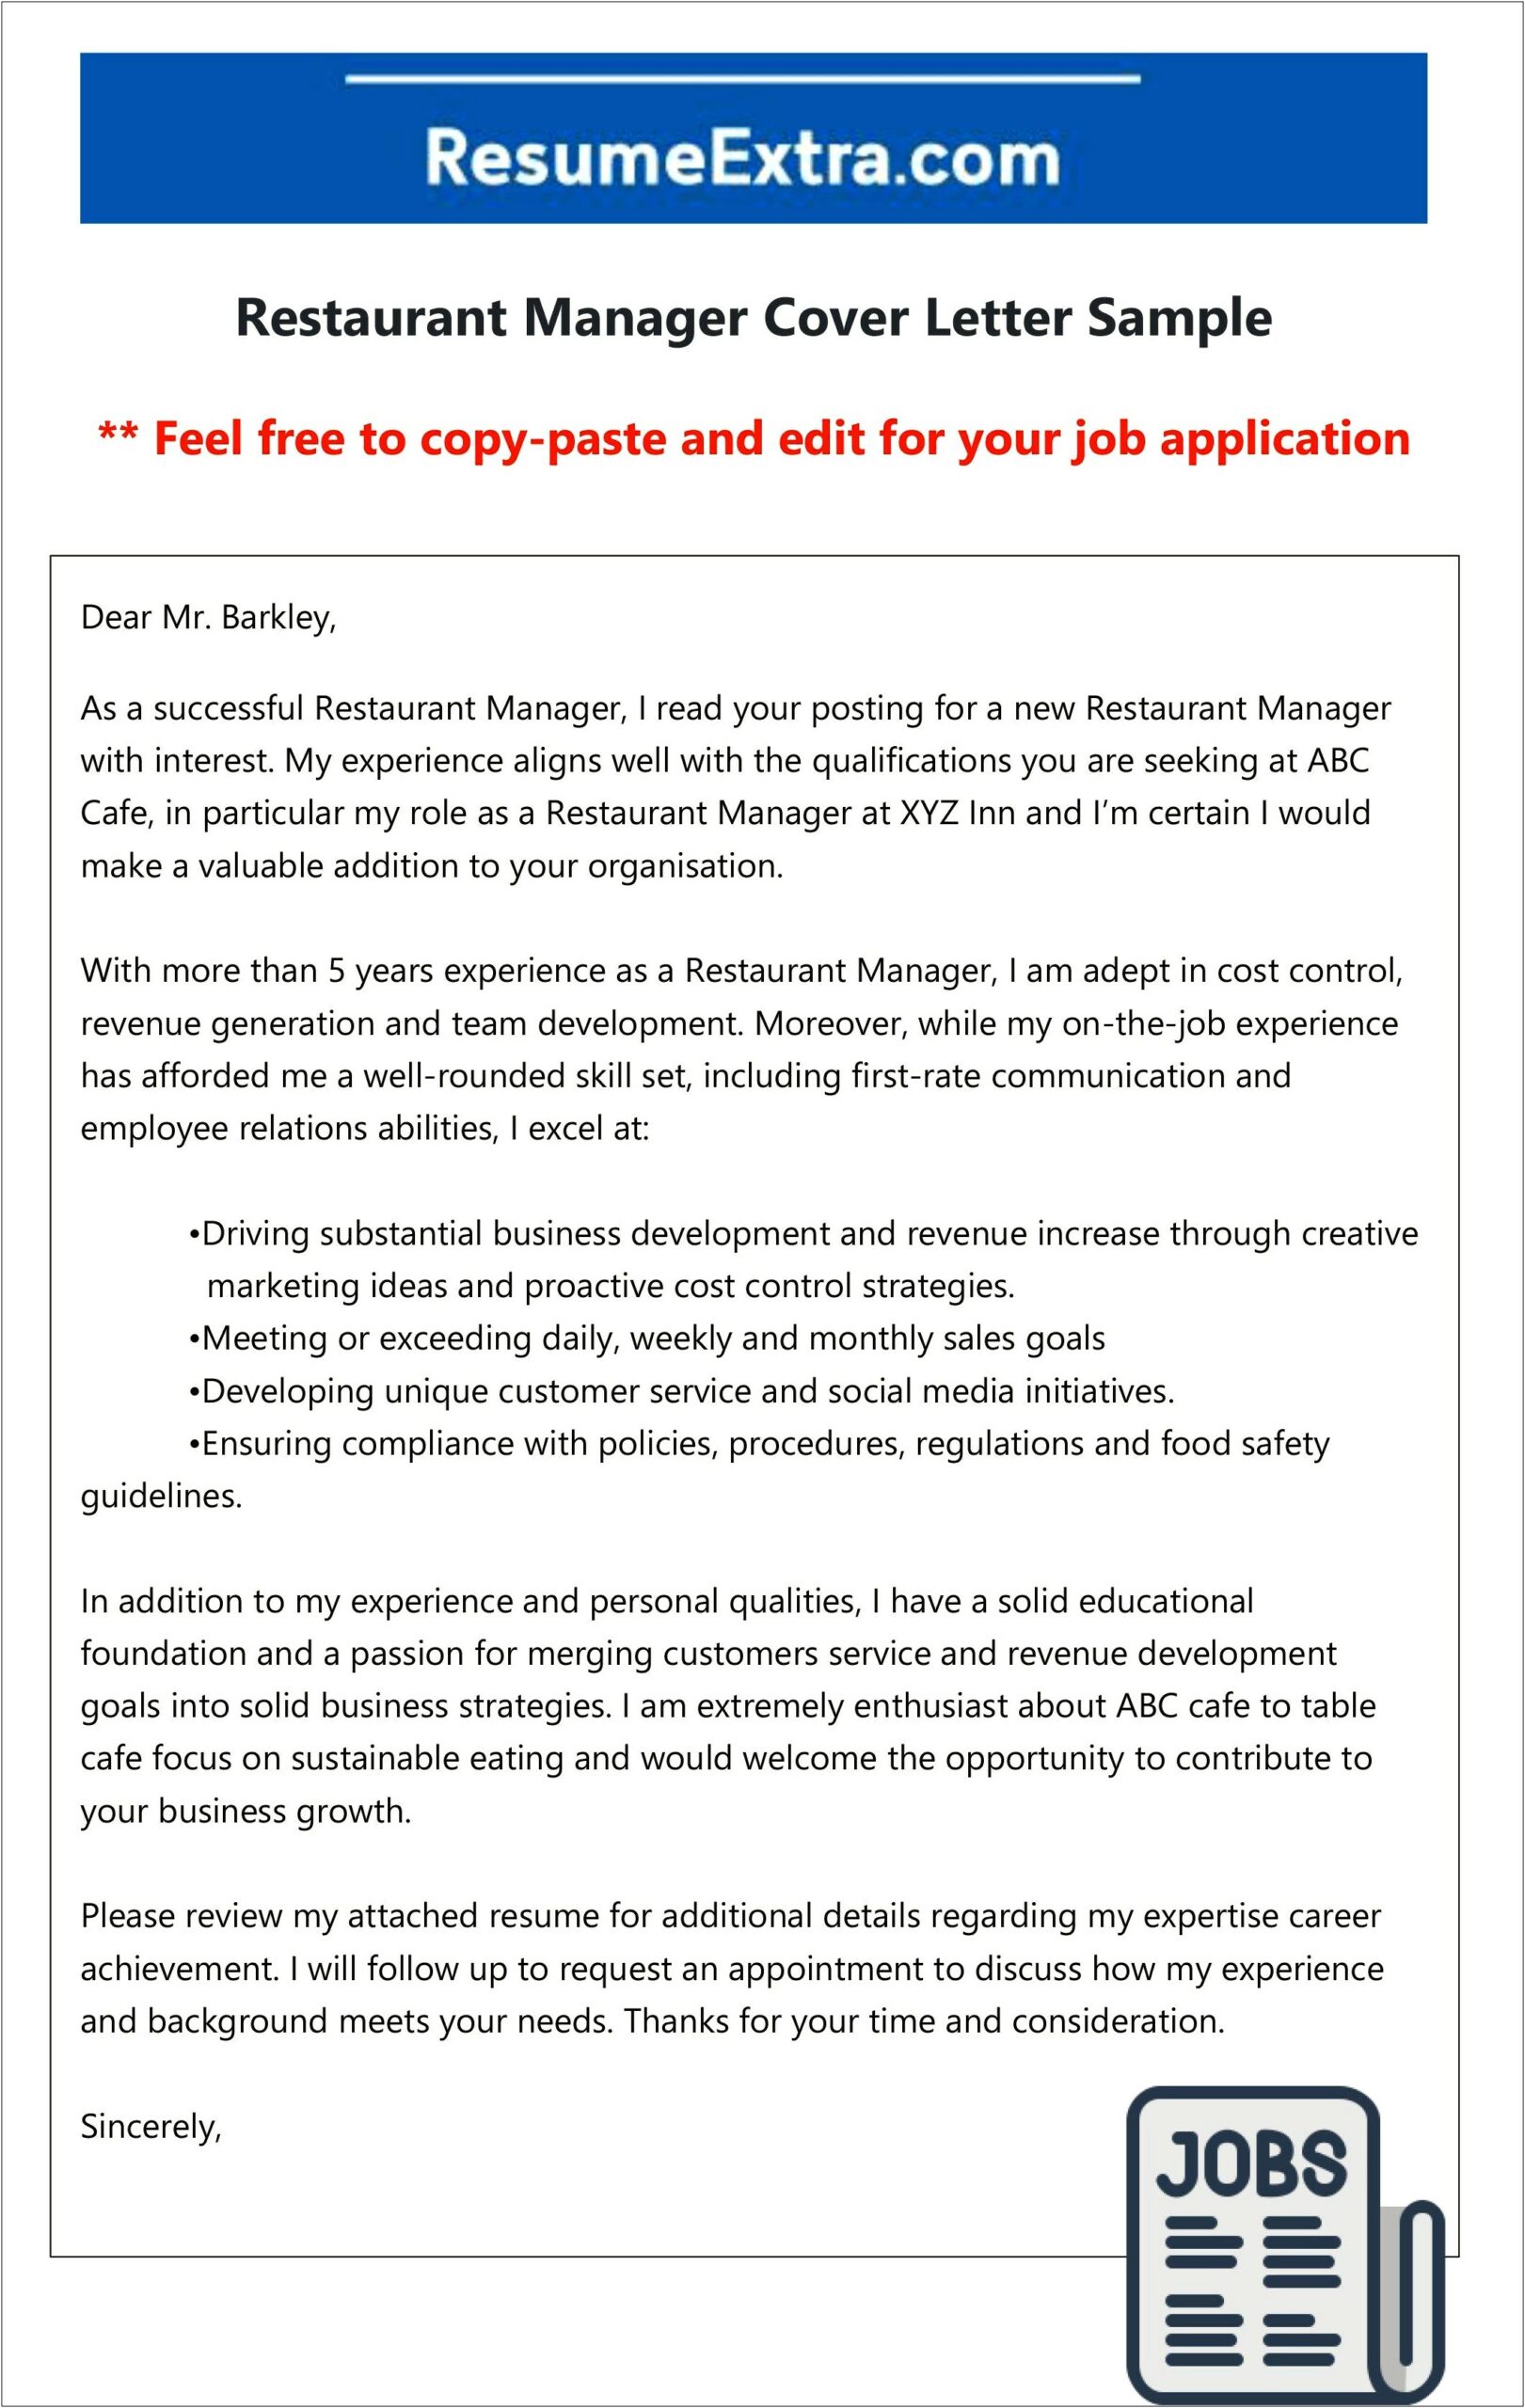 Restaurant Management Resume Cover Letter Free